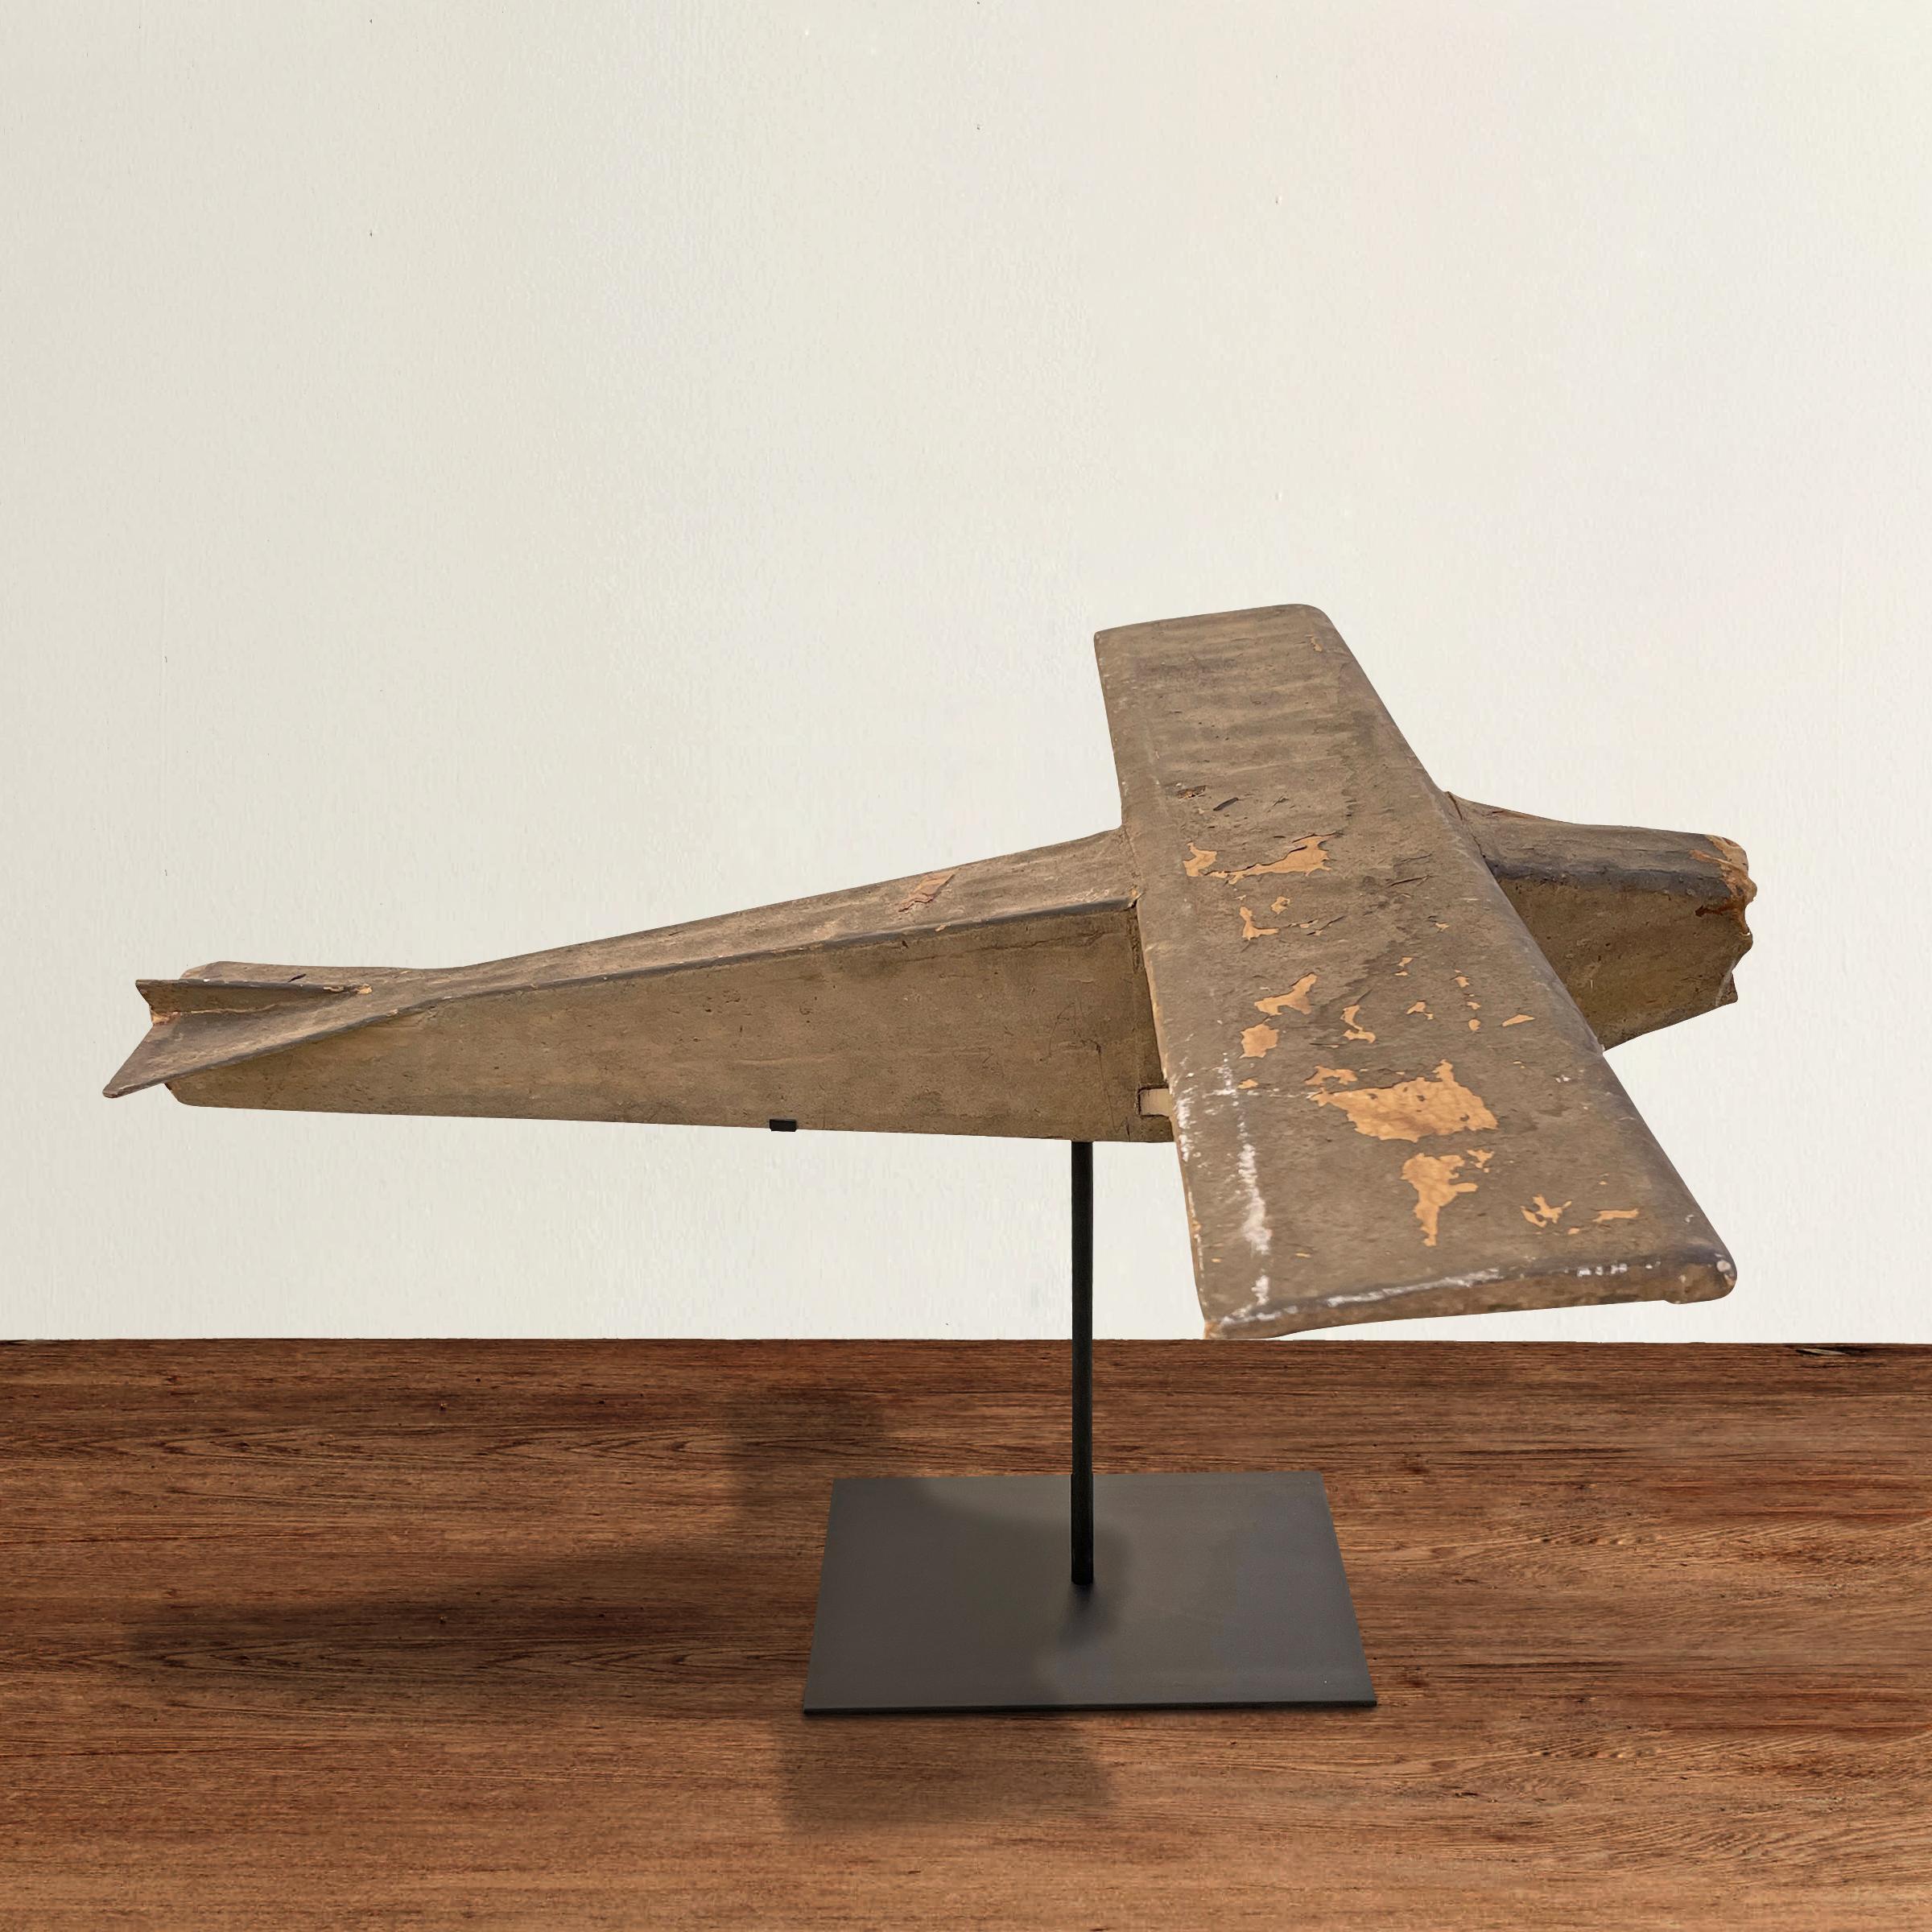 Ein wunderschönes und charmantes Modell eines amerikanischen Buschflugzeugs aus dem frühen 20. Jahrhundert, das mit bemalter Leinwand über ein Holzskelett gespannt und auf eine spezielle Stahlhalterung montiert wurde.